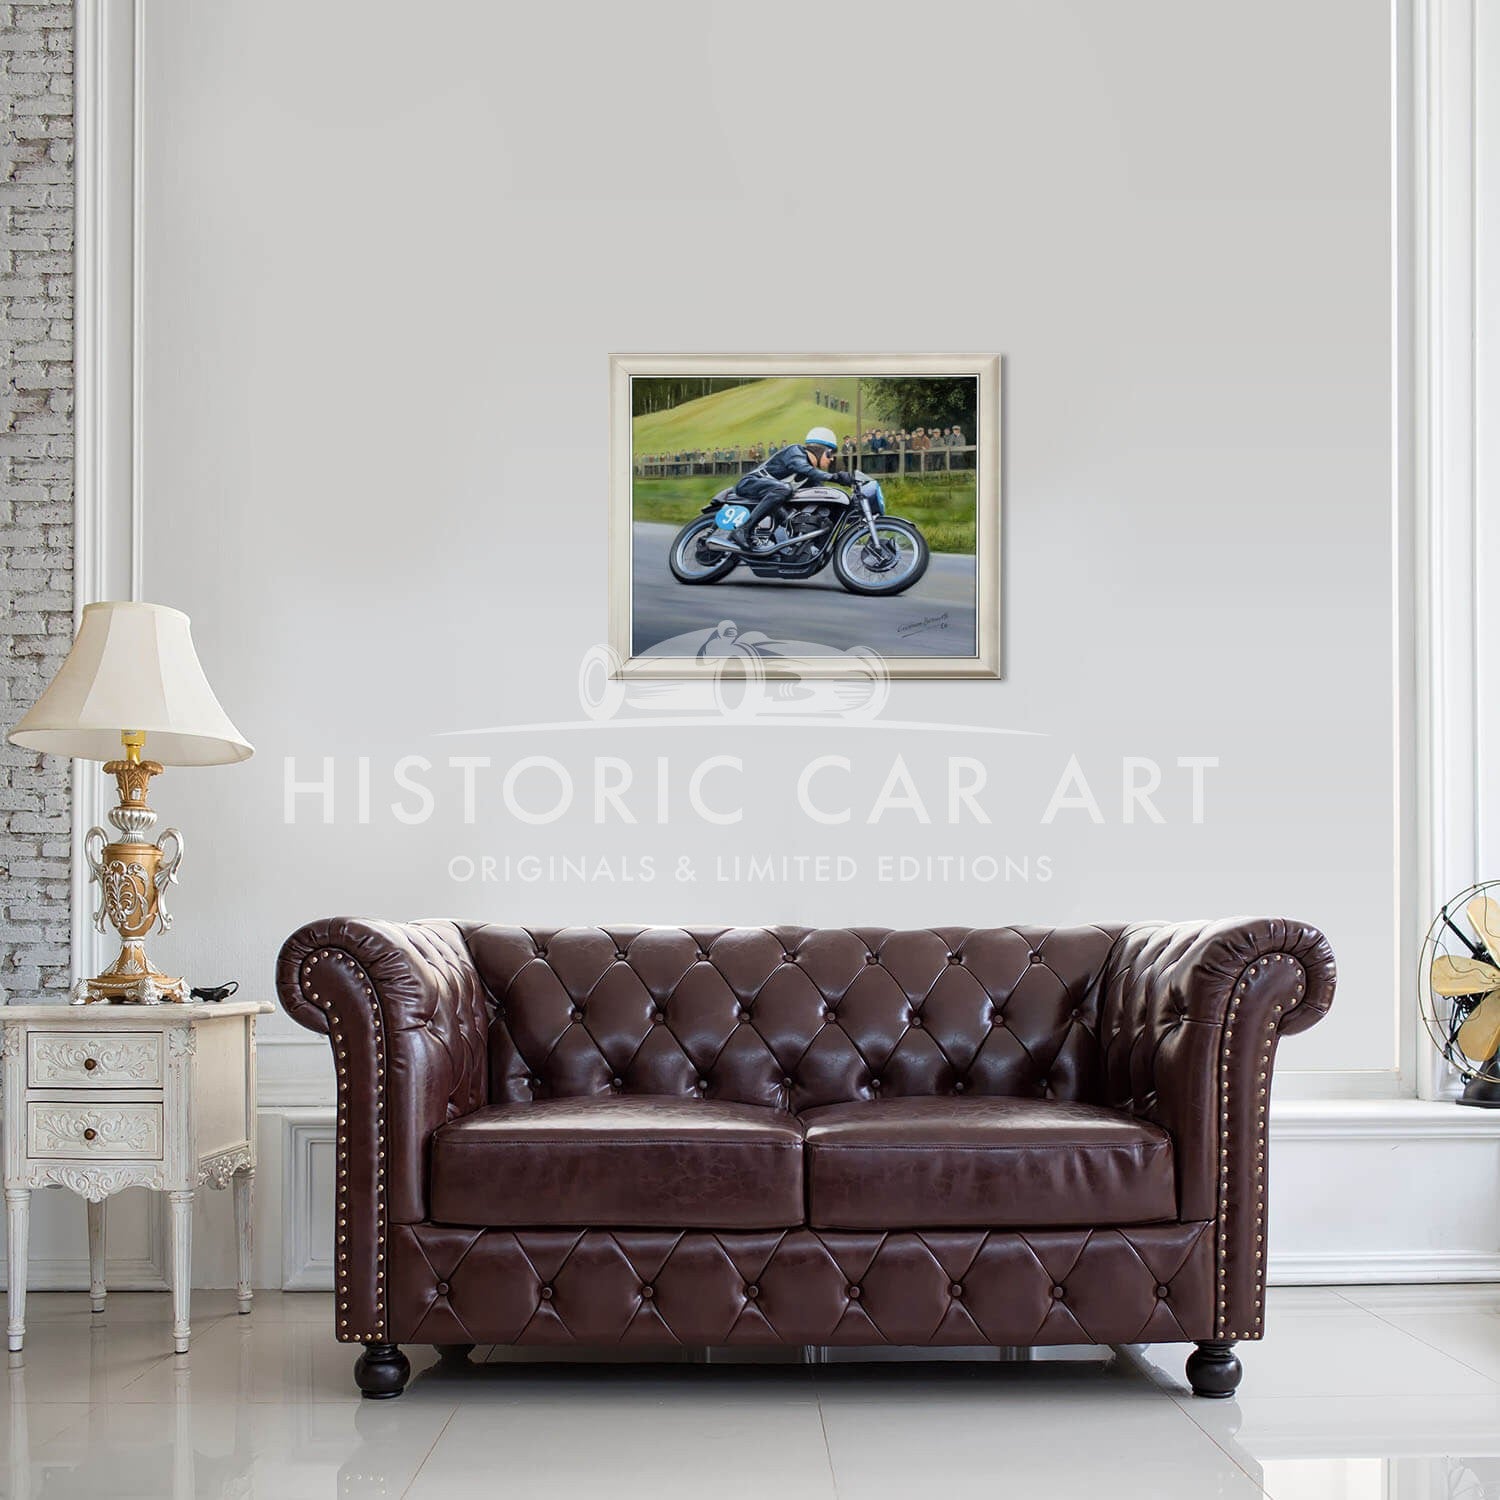 John Surtees | 1955 Manx Norton Motorcycle | Olivers Mount | Painting